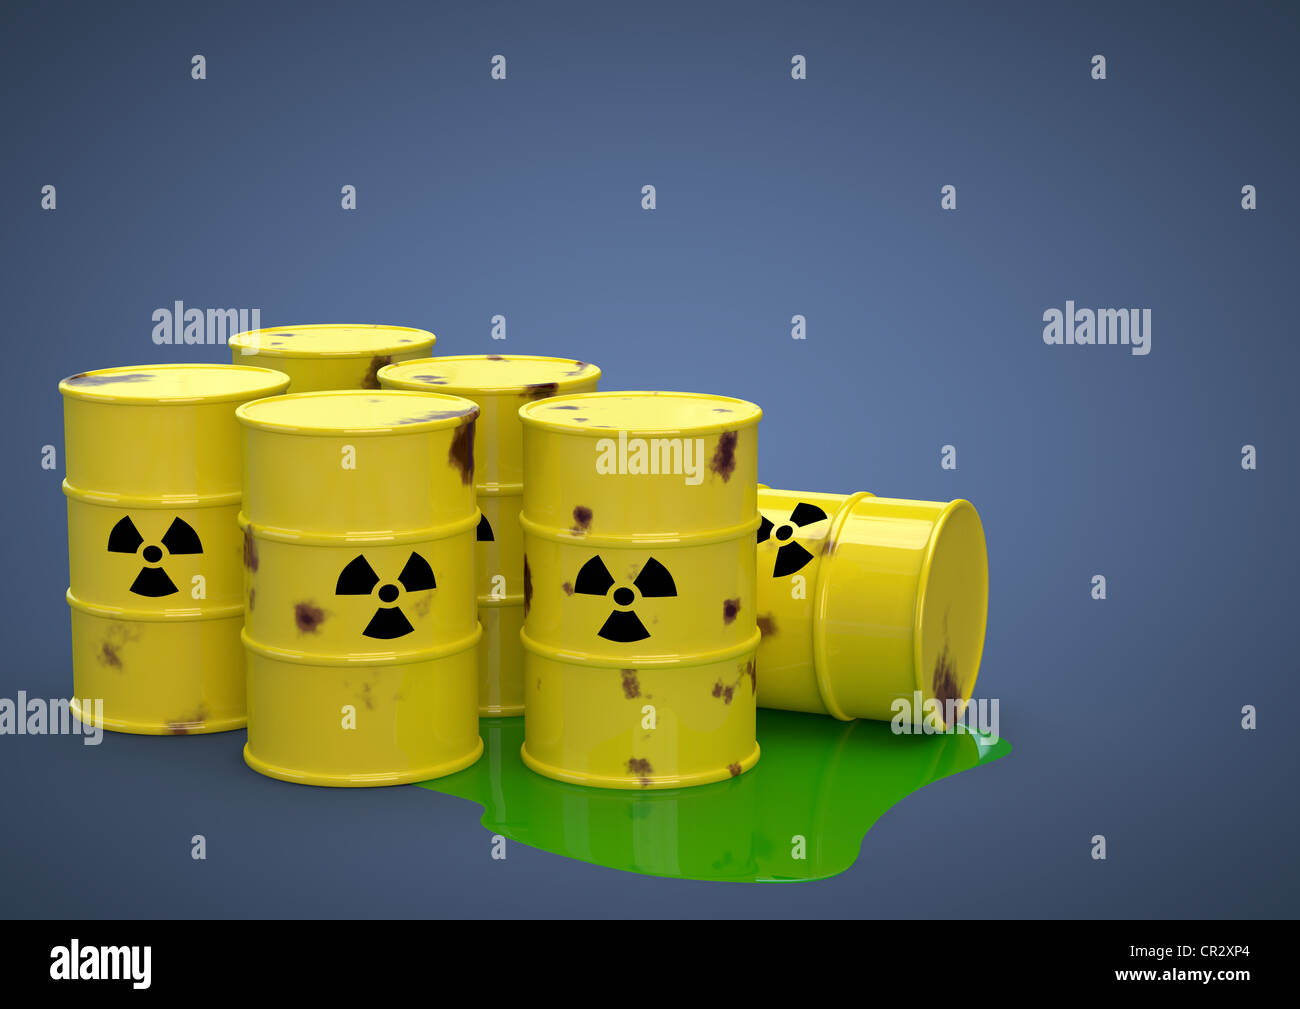 Rostigen Fässern von radioaktivem Atommüll, Endlagerung, Atomkraft, symbolisches Bild, 3D illustration Stockfoto